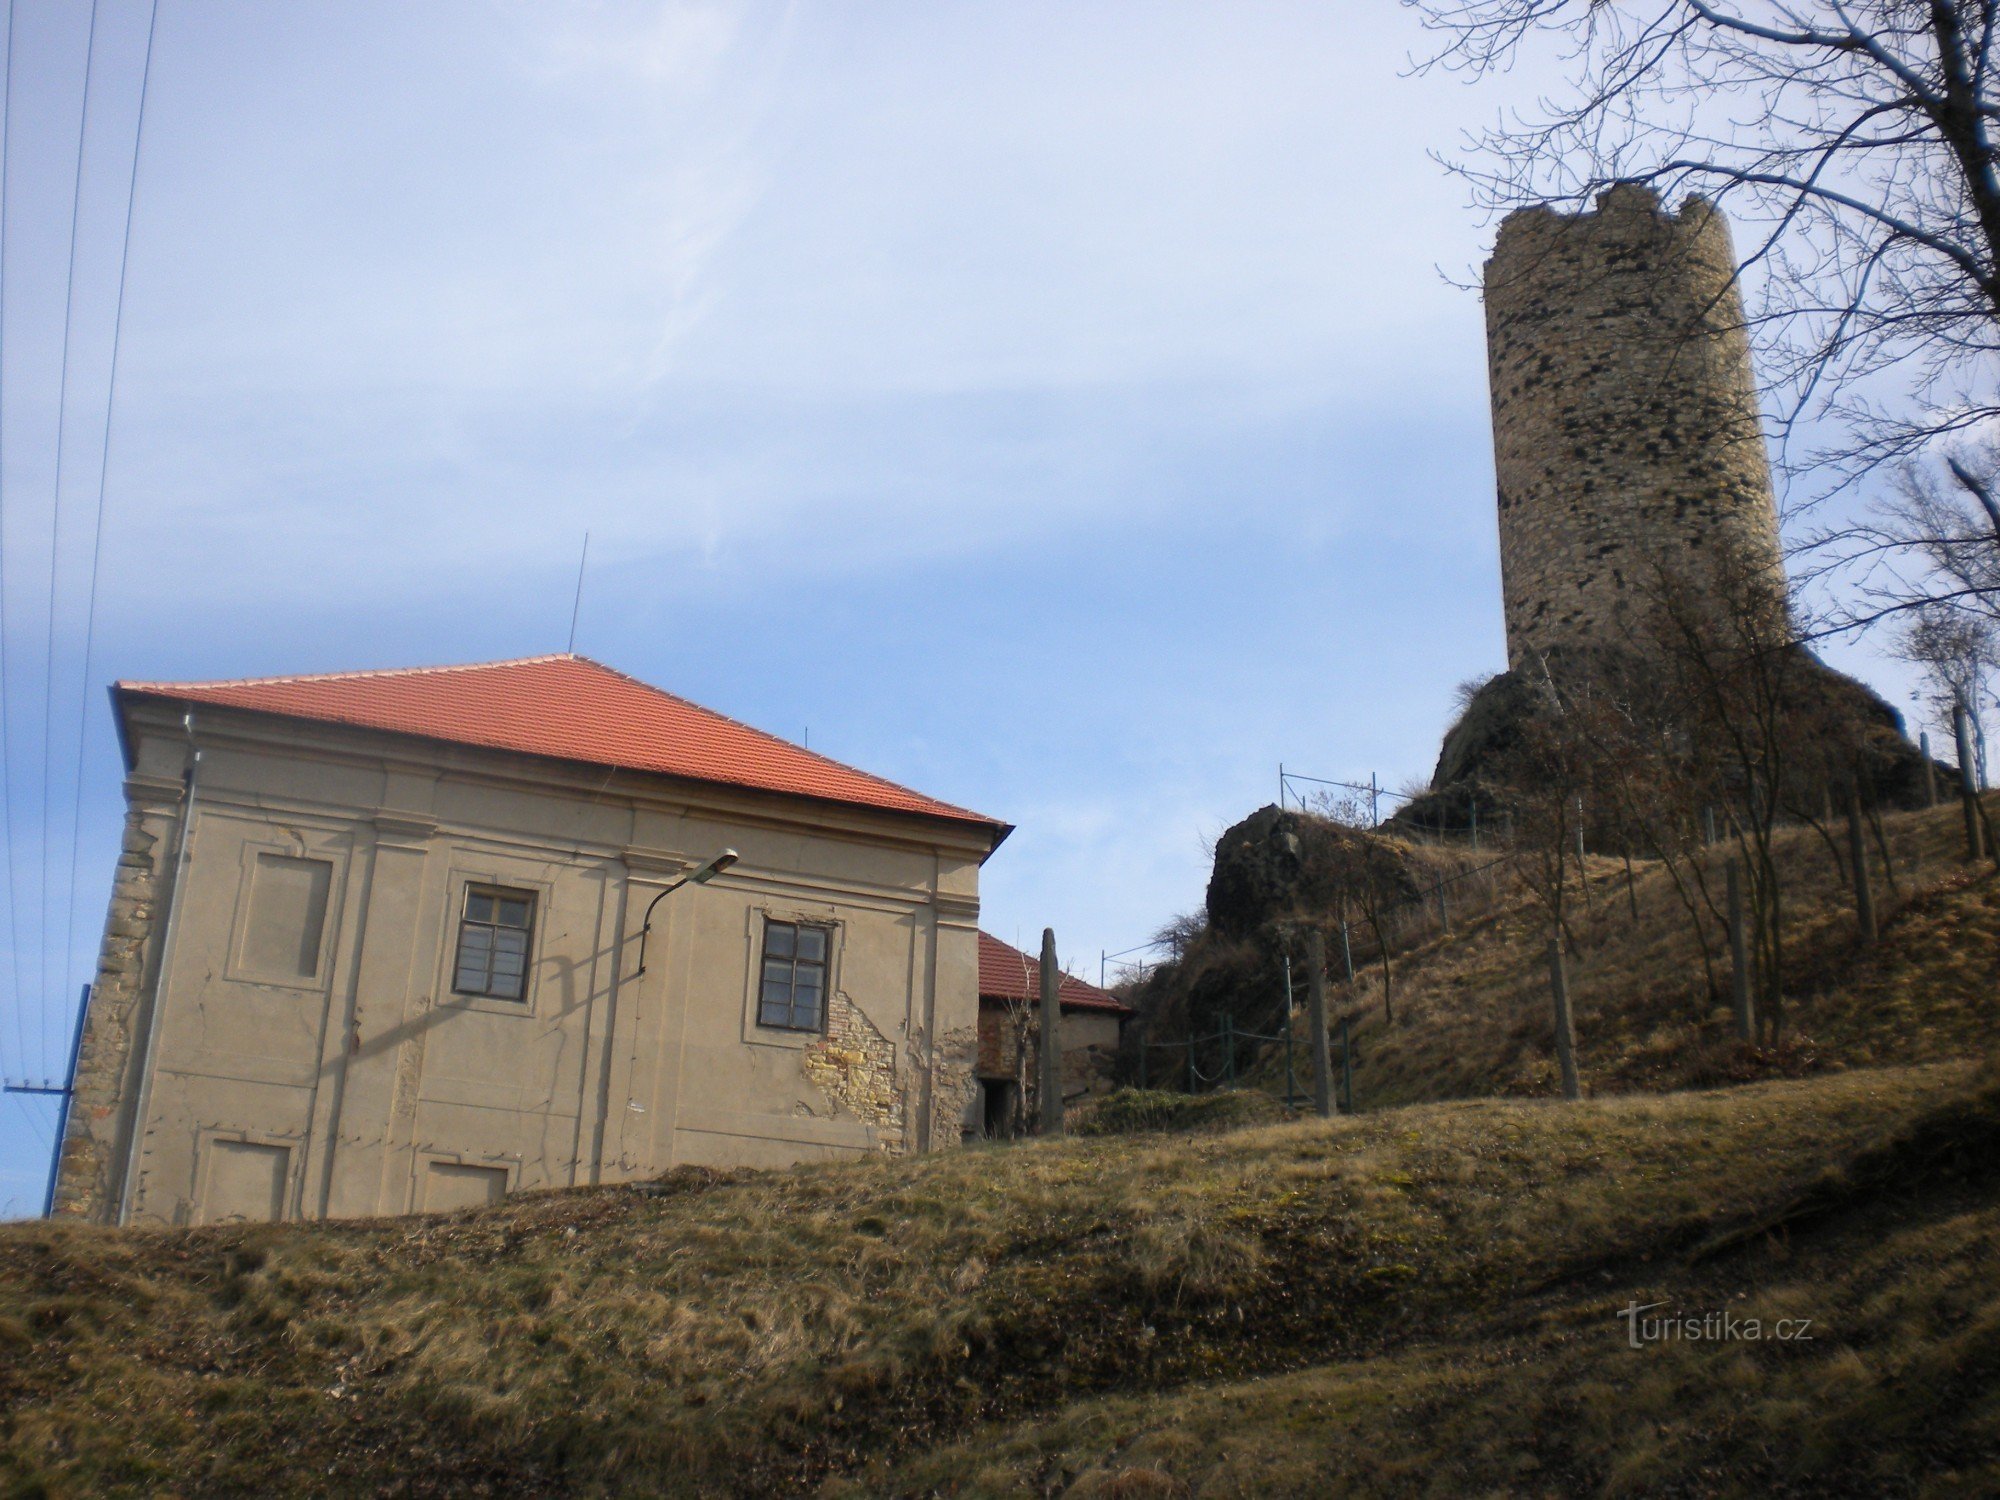 Schloss und Burg